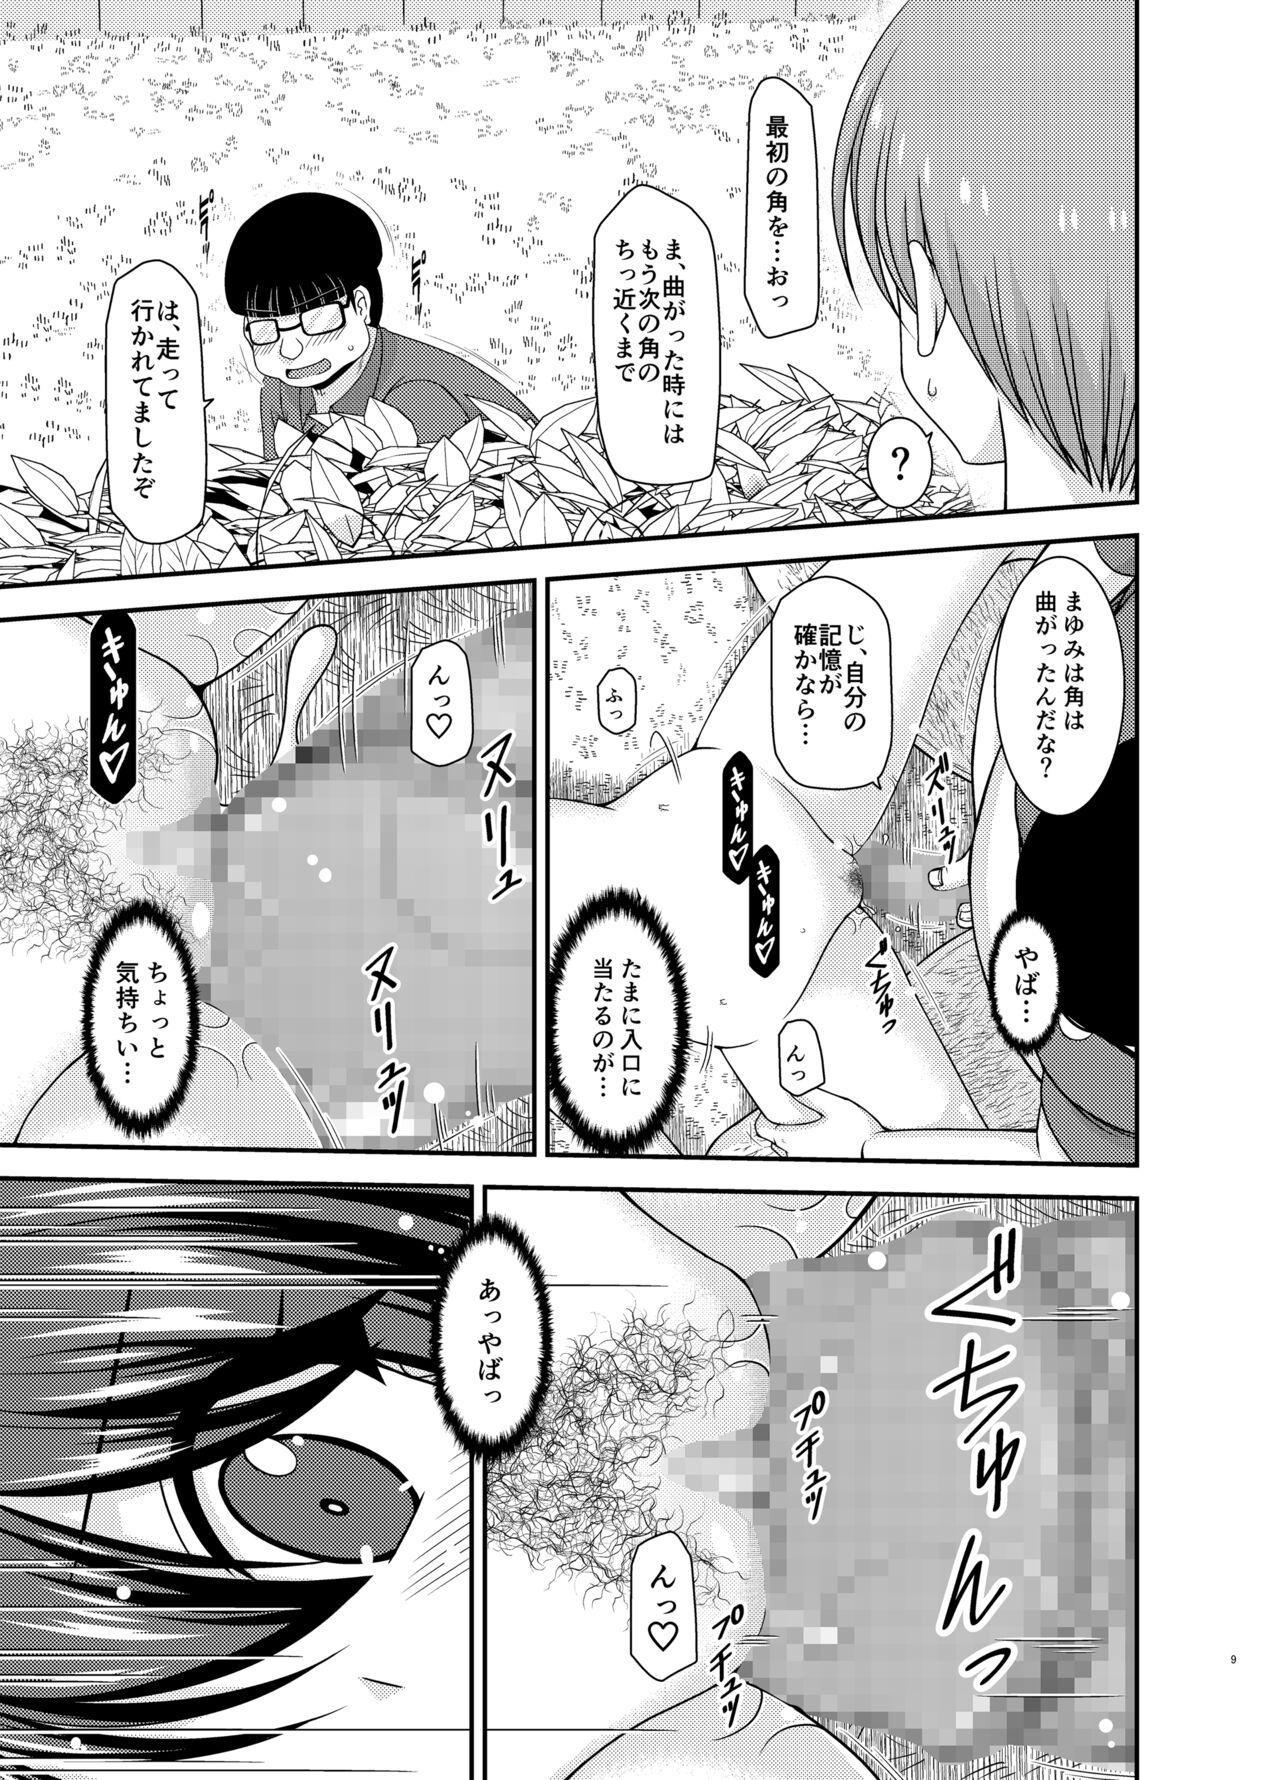 Bwc Netorare Roshutsu Shoujo 2 - Original 8teen - Page 8